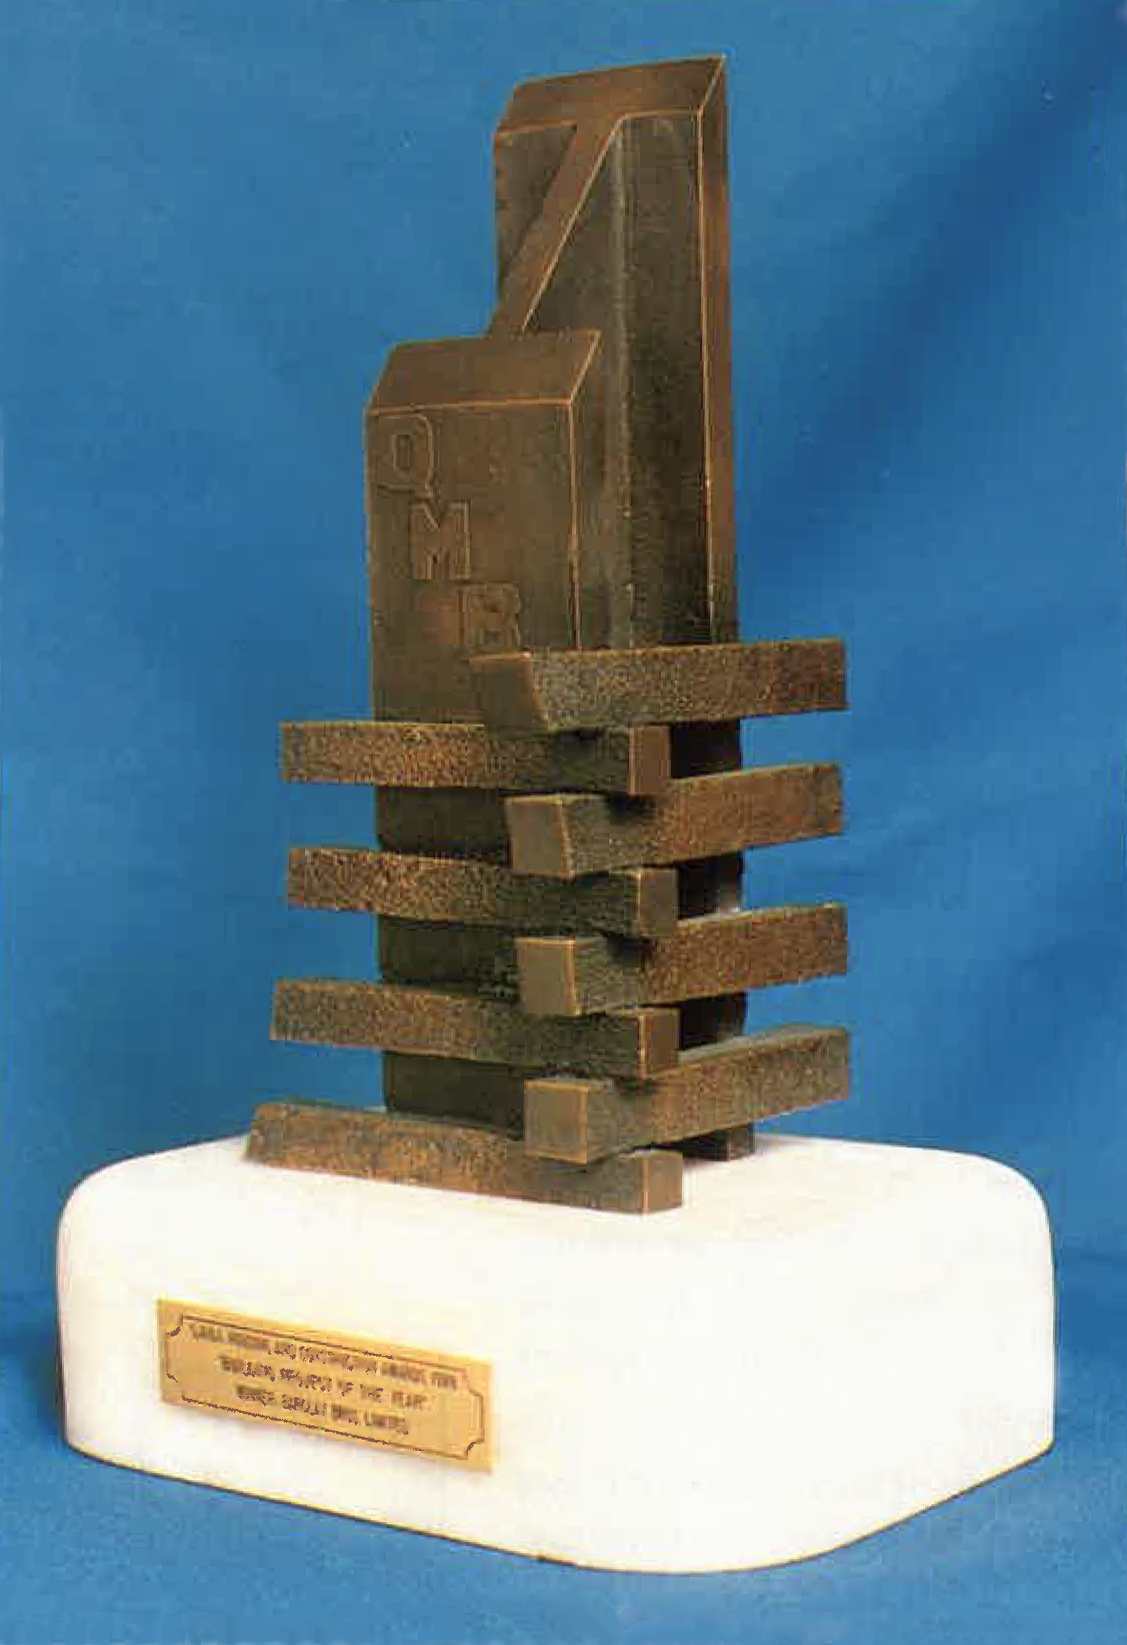 1980-1990s trophy